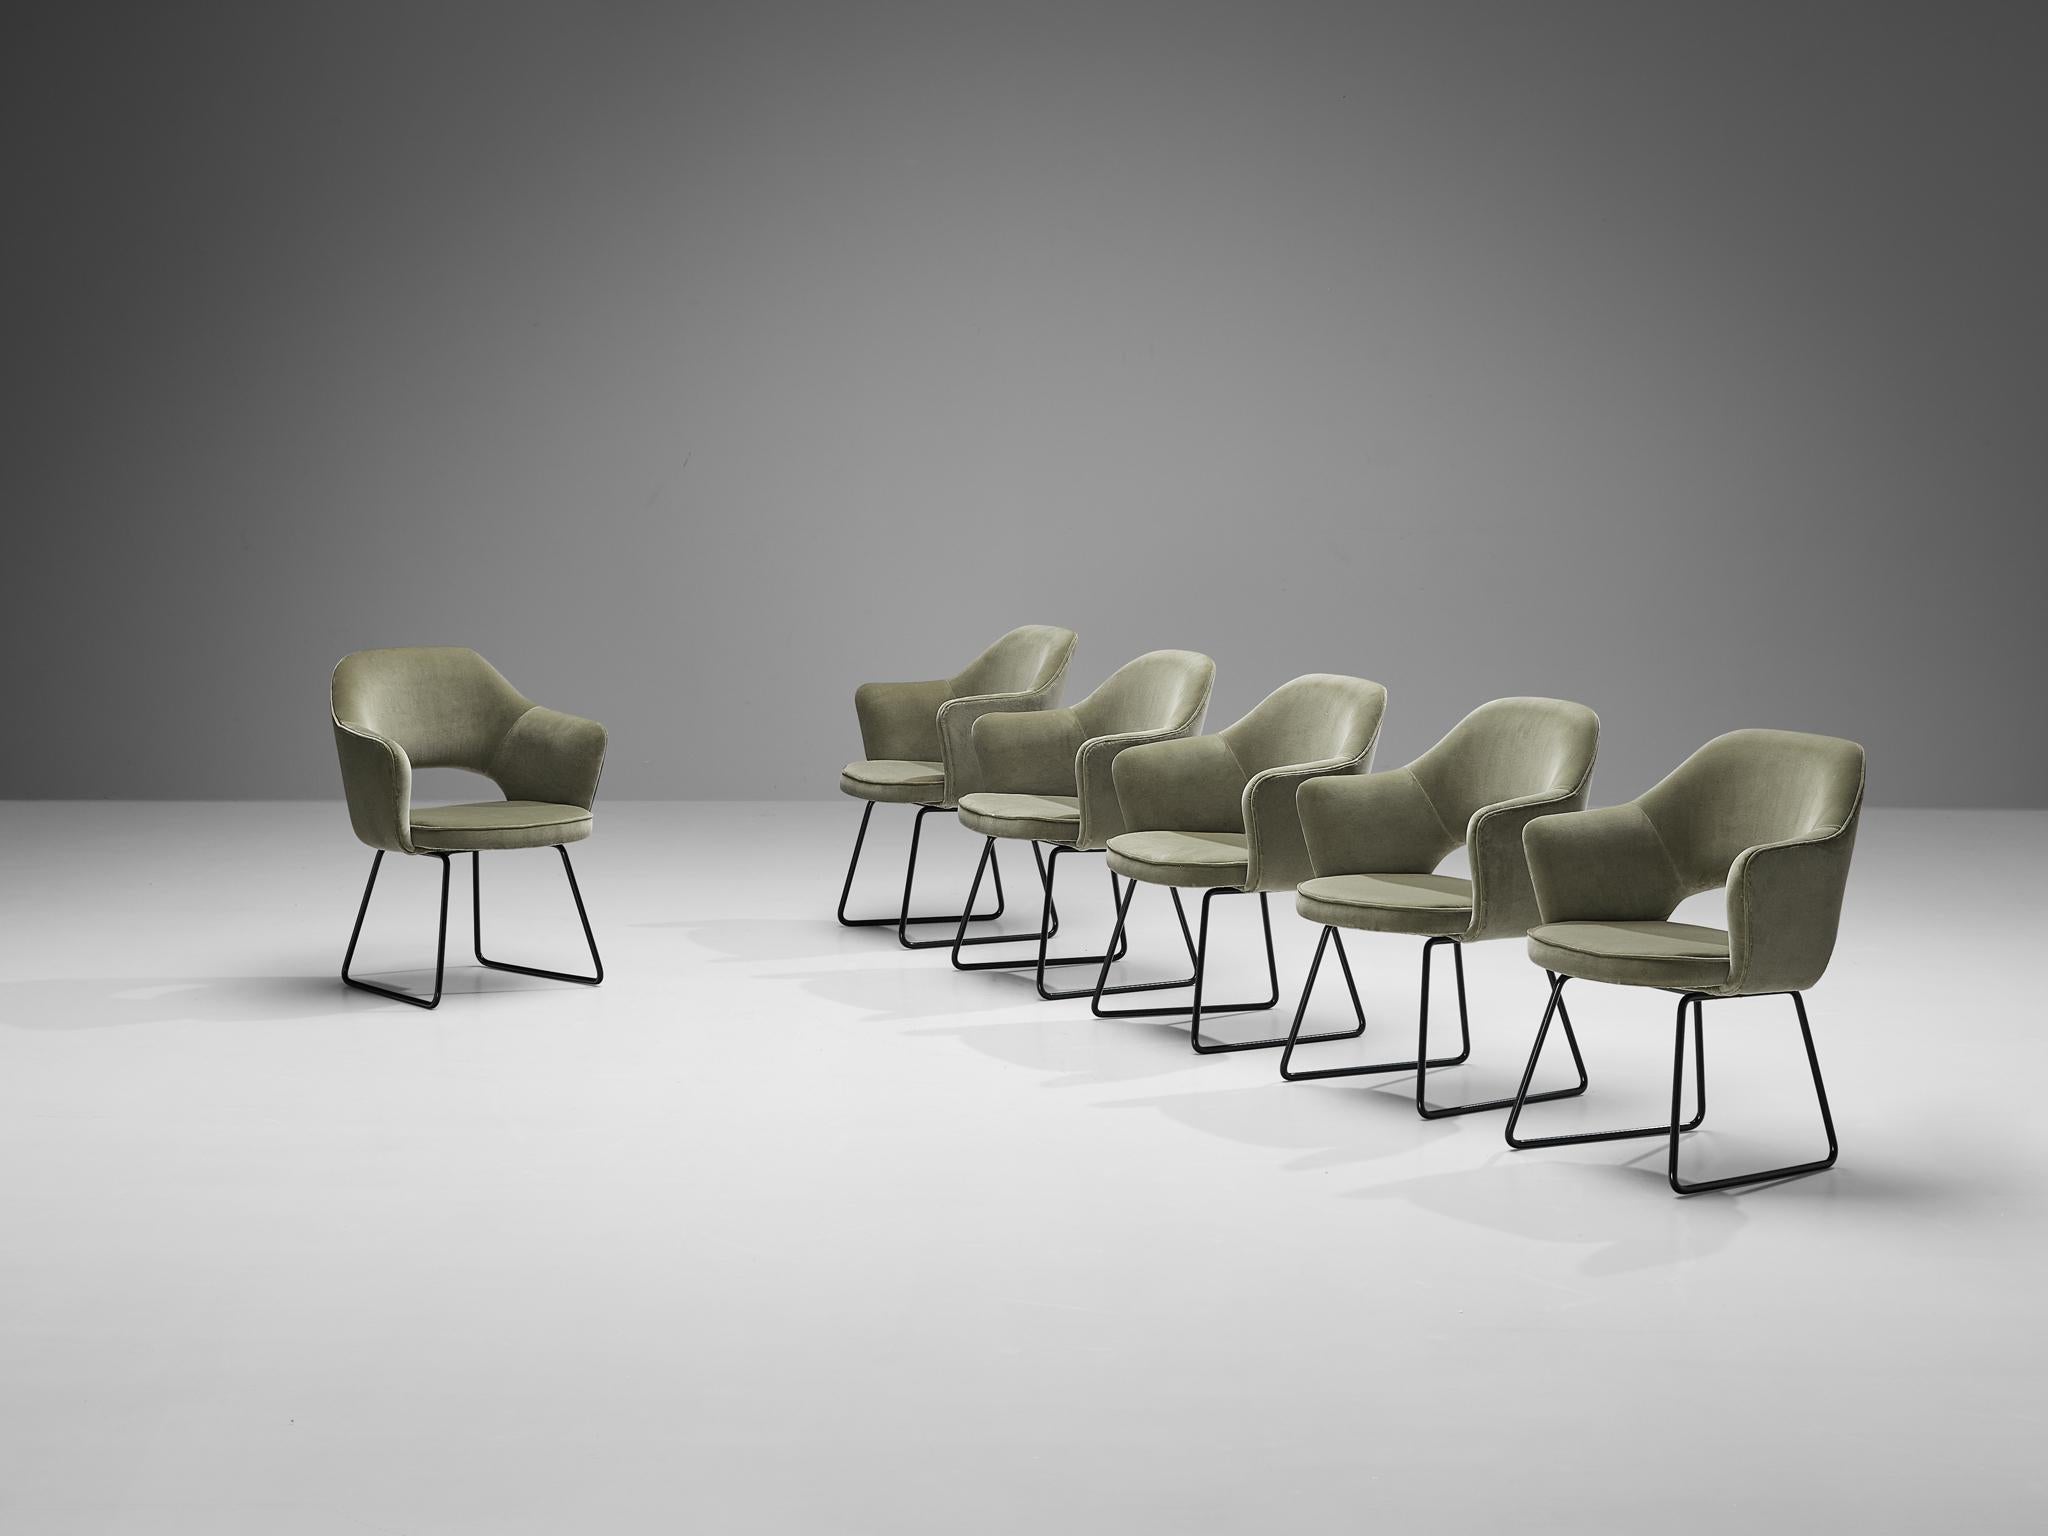 Eero Saarinen pour Knoll International, édition limitée de fauteuils 'Conference', velours, métal enduit, France, Paris, conçu en 1957

Cet ensemble de fauteuils a été commandé par le siège de l'UNESCO situé à Paris. Ce bâtiment emblématique a été